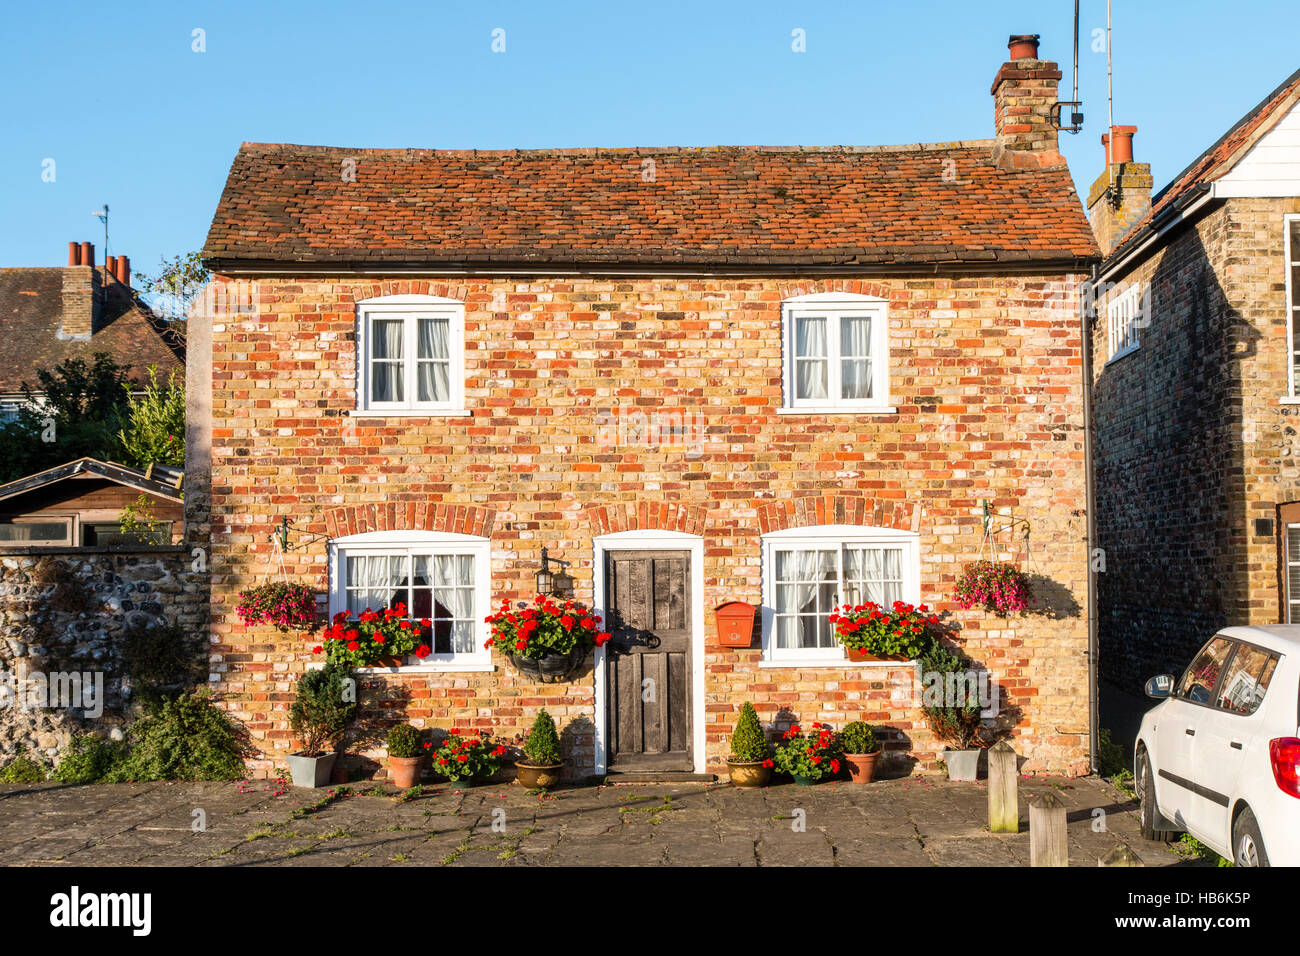 England, Sandwich. Ziemlich freistehende Doppel fronted Ziegelhaus mit Blumenkästen mit roten Blüten außerhalb. Blauer Himmelshintergrund. Stockfoto